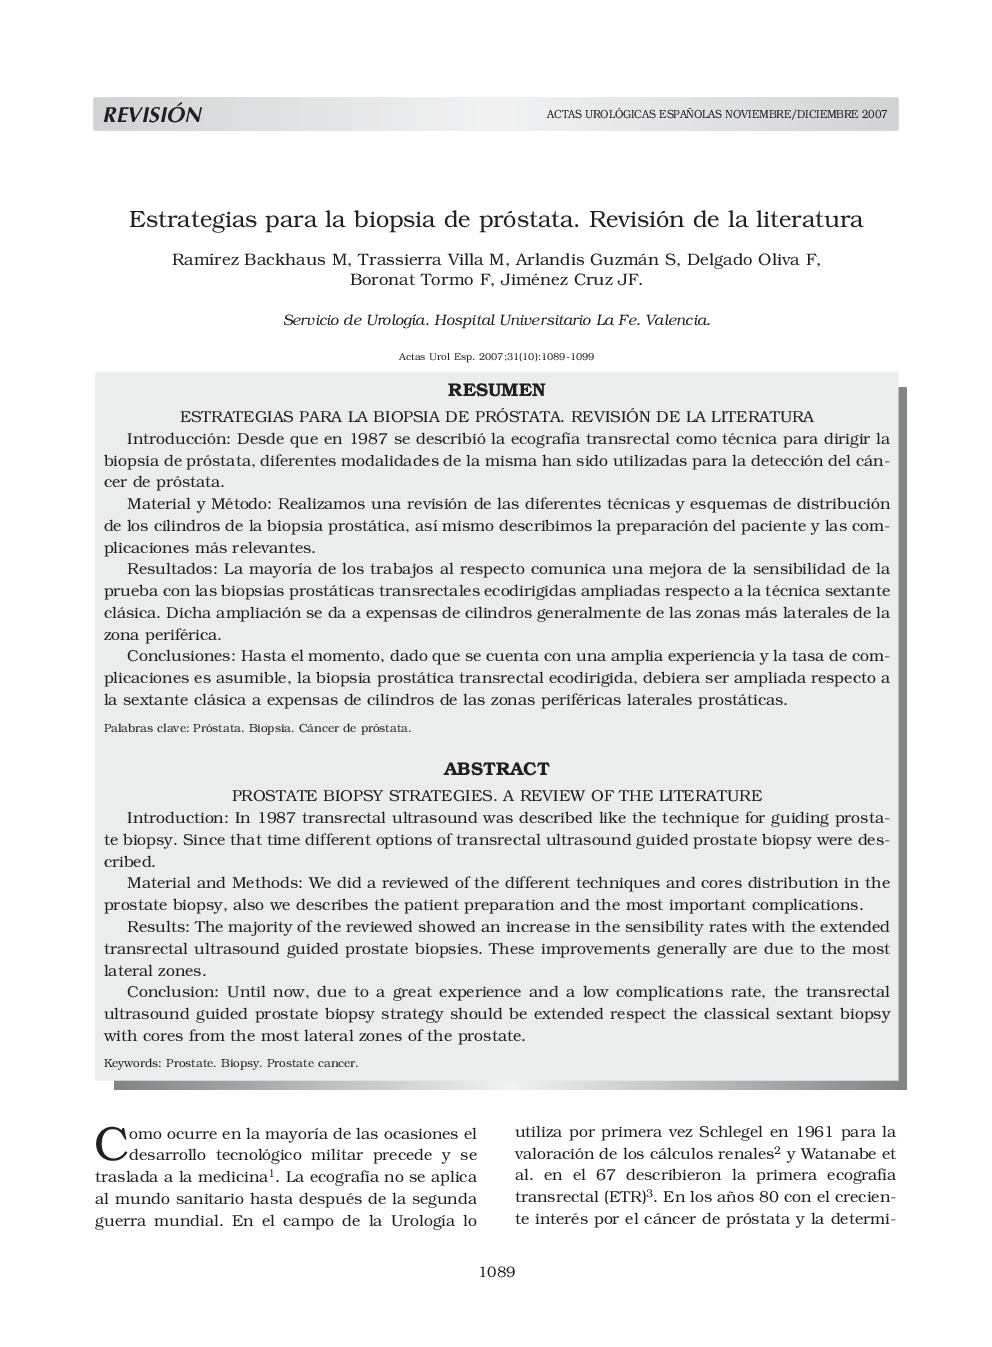 Estrategias para la biopsia de próstata. Revisión de la literaturaProstate biopsy strategies. a review of the literature